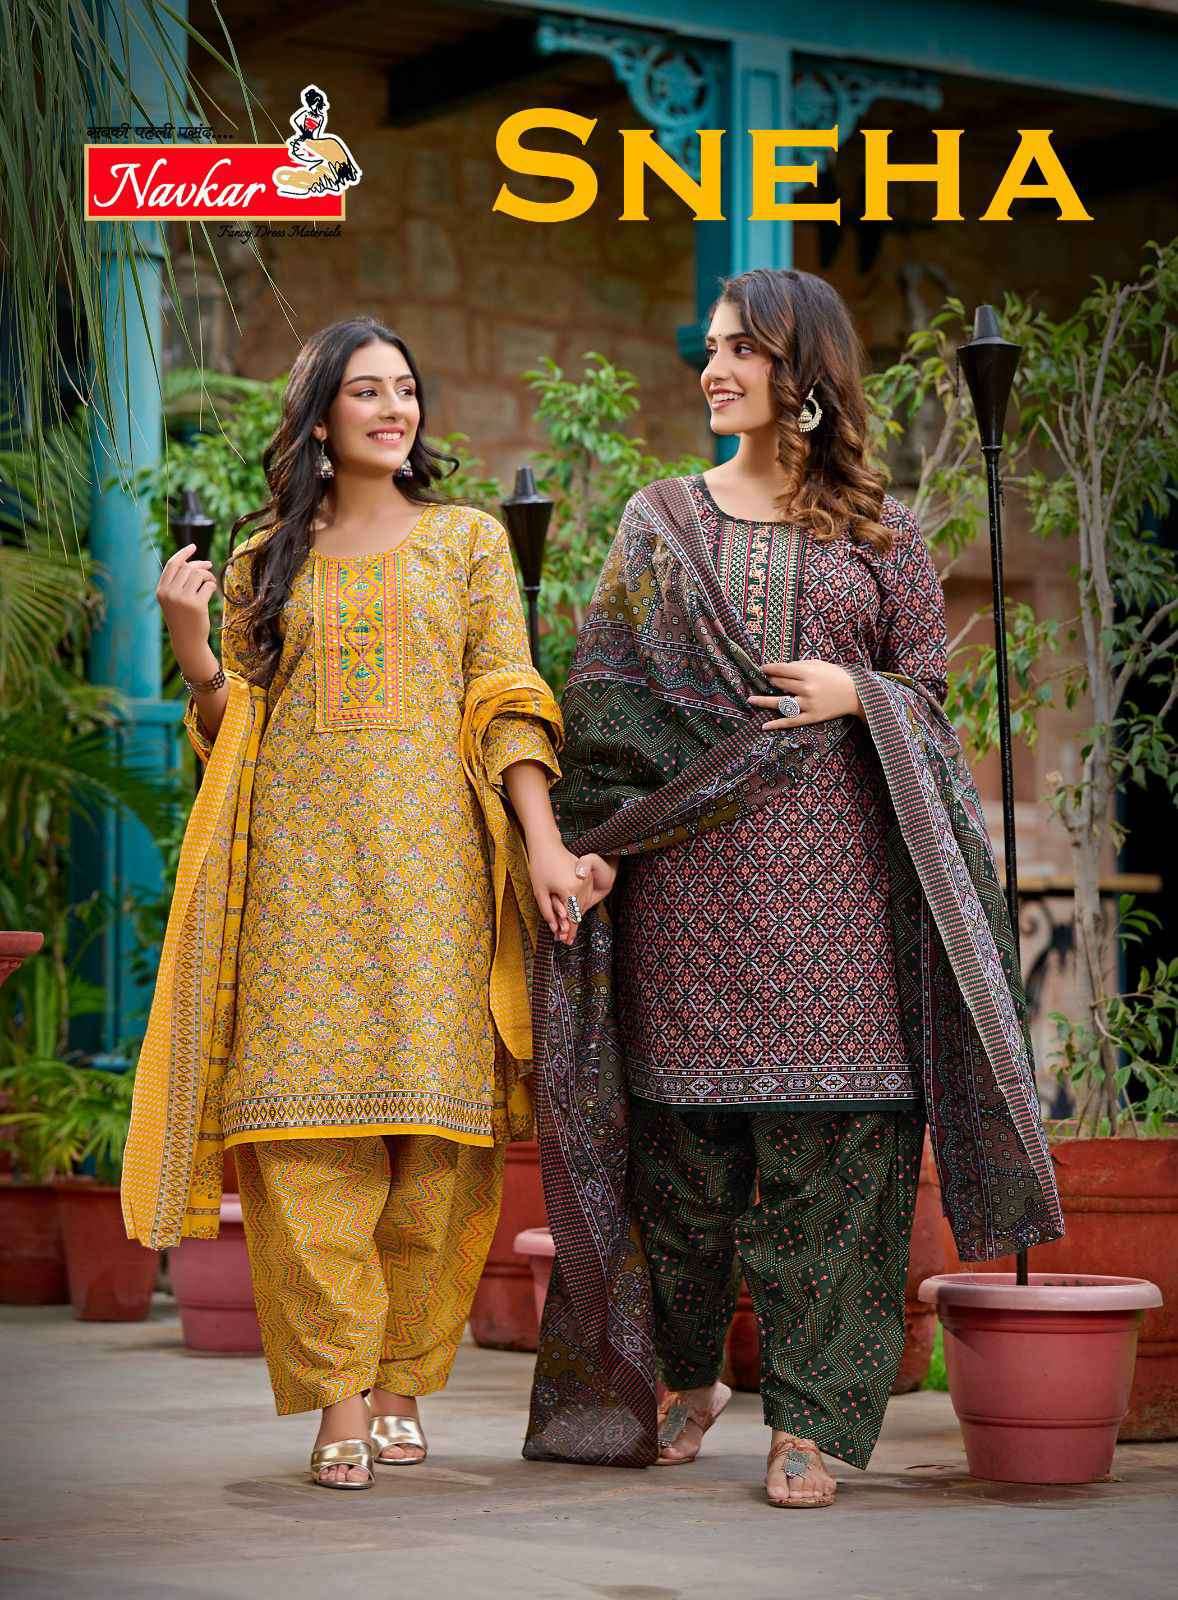 Navkar Sneha Fancy Cotton Readymade Salwar Kameez Daily Wear Dress Supplier